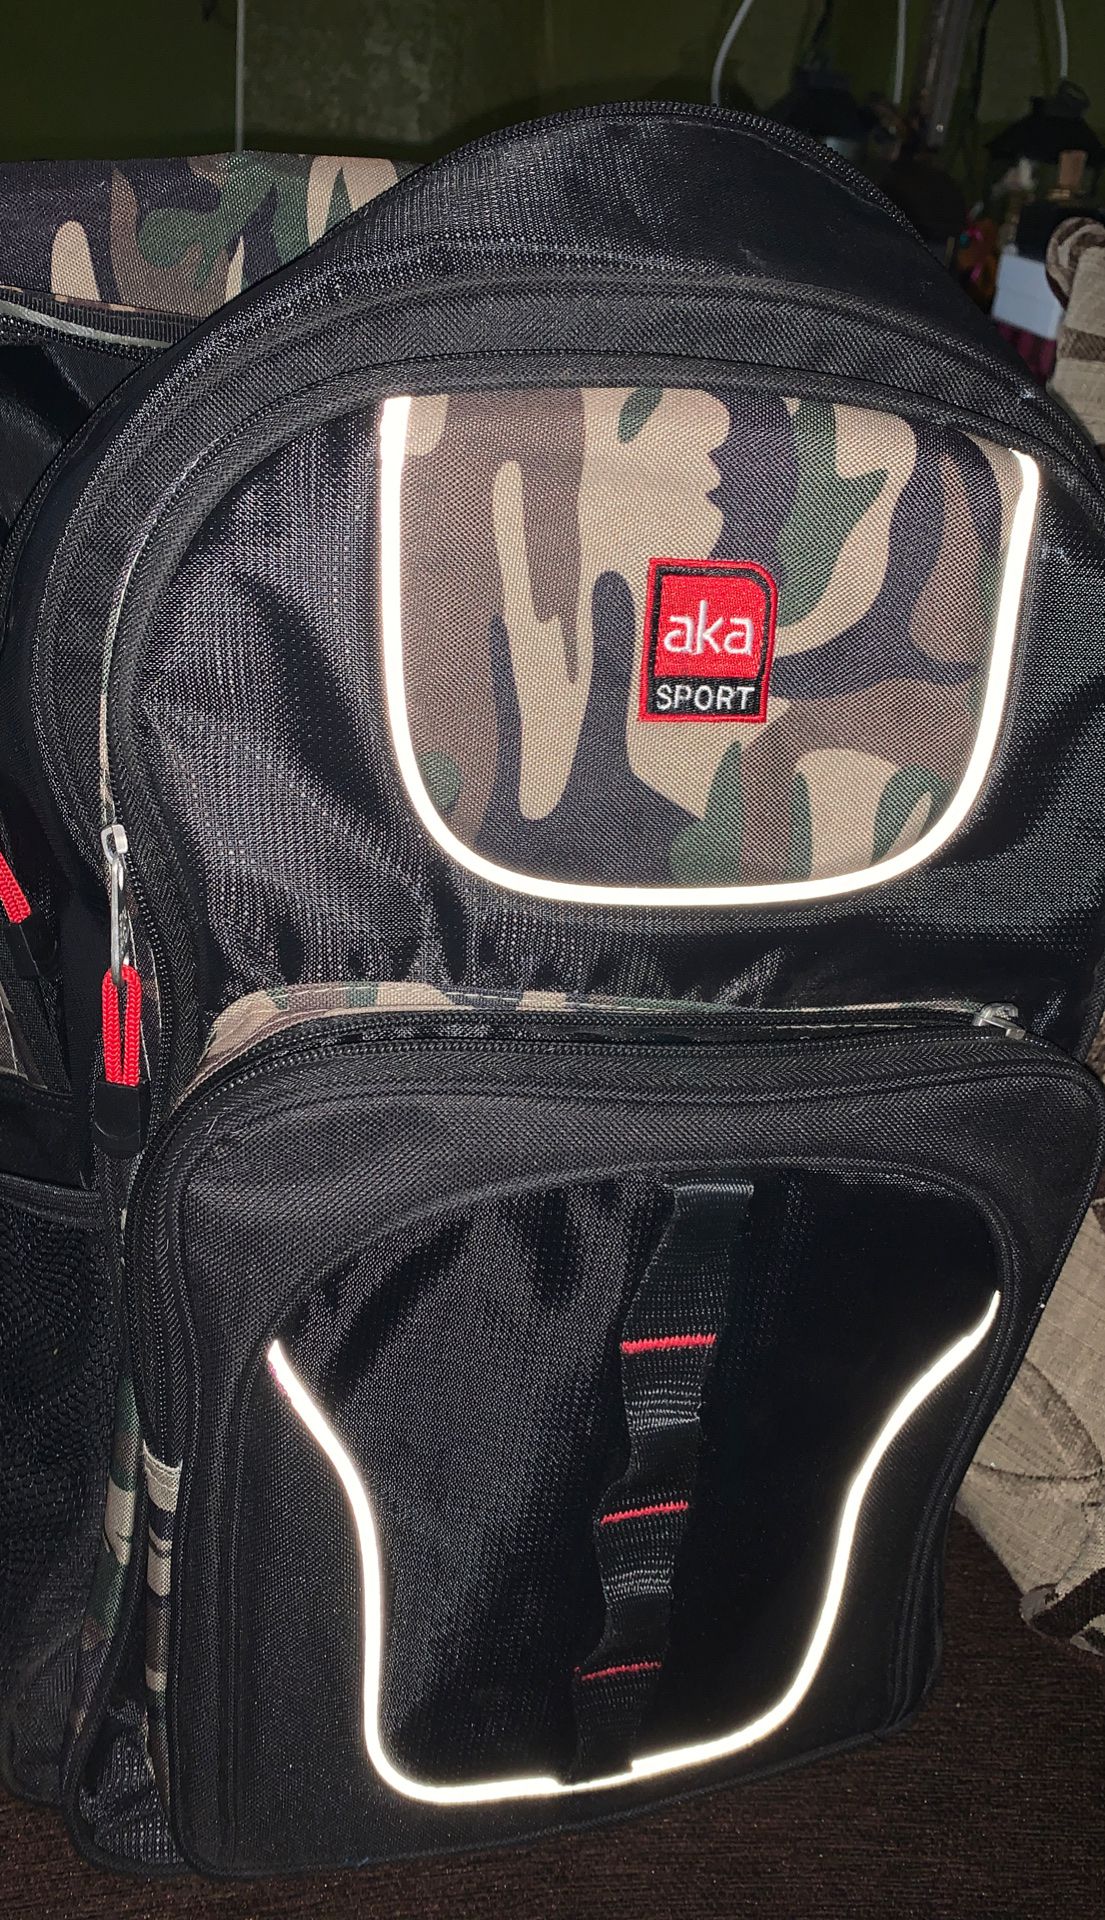 aka sport Backpack